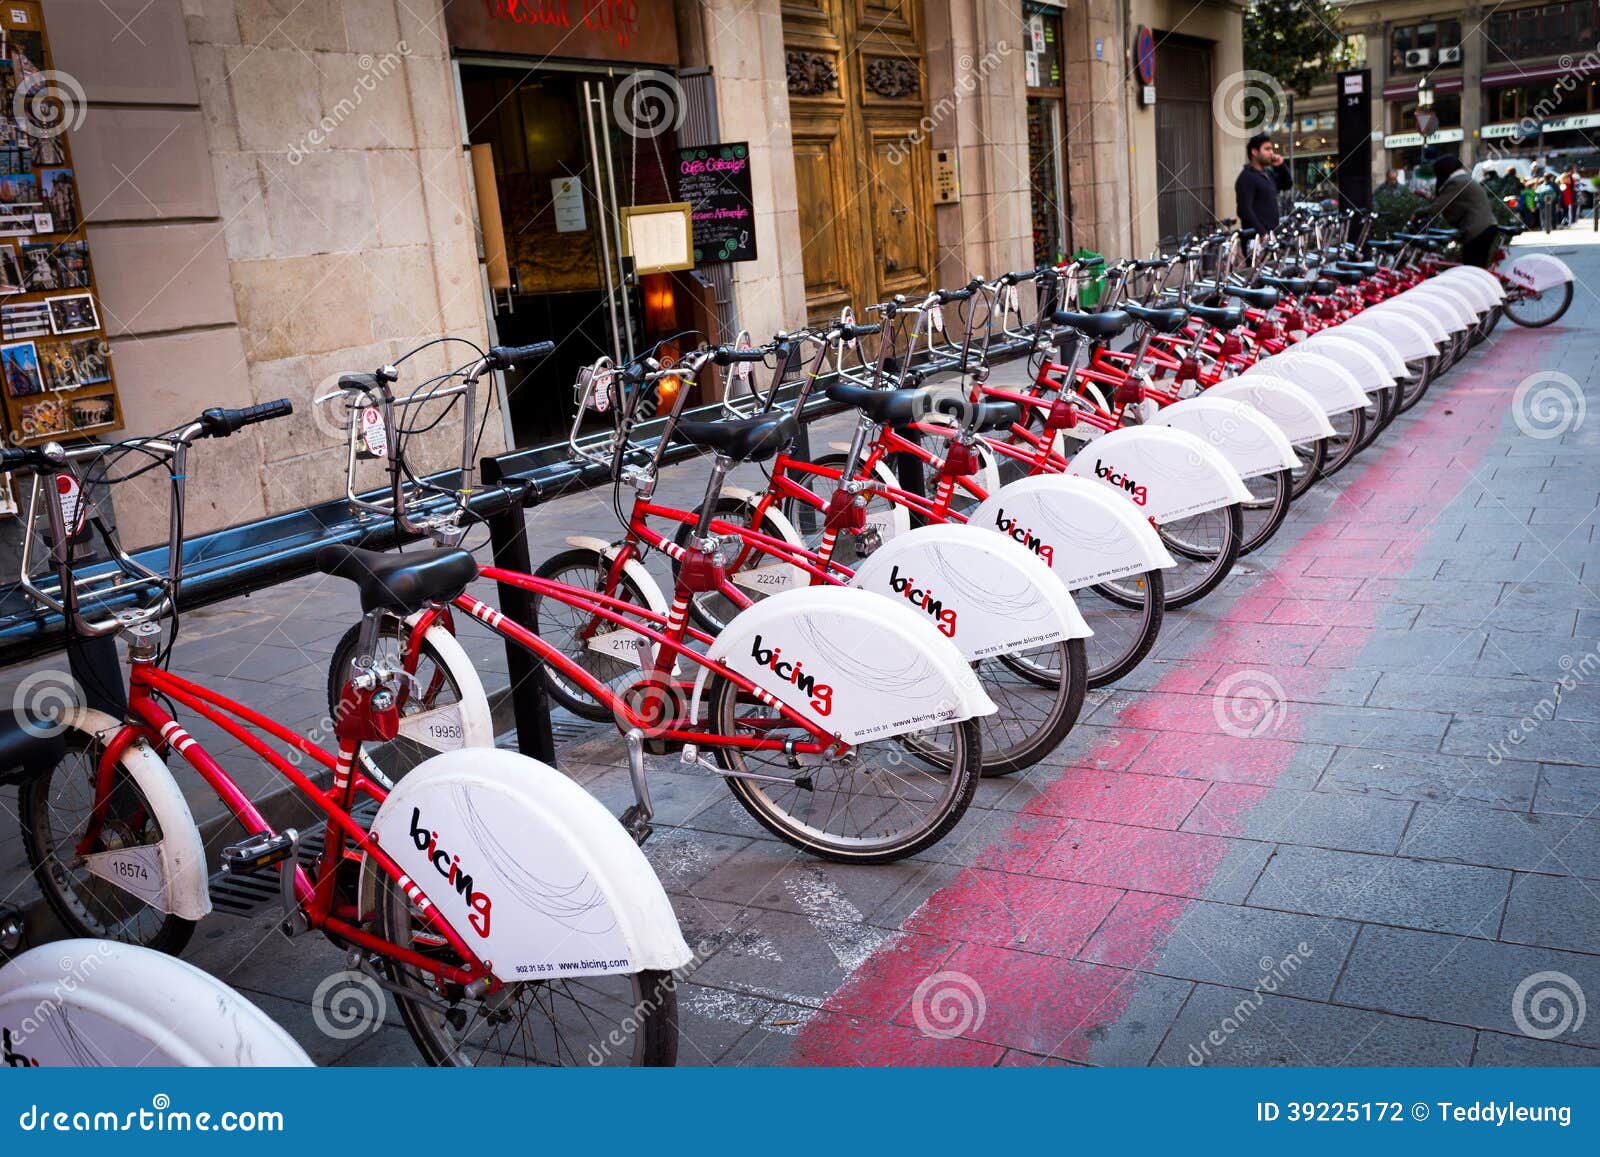 bike sharing barcelona tourist